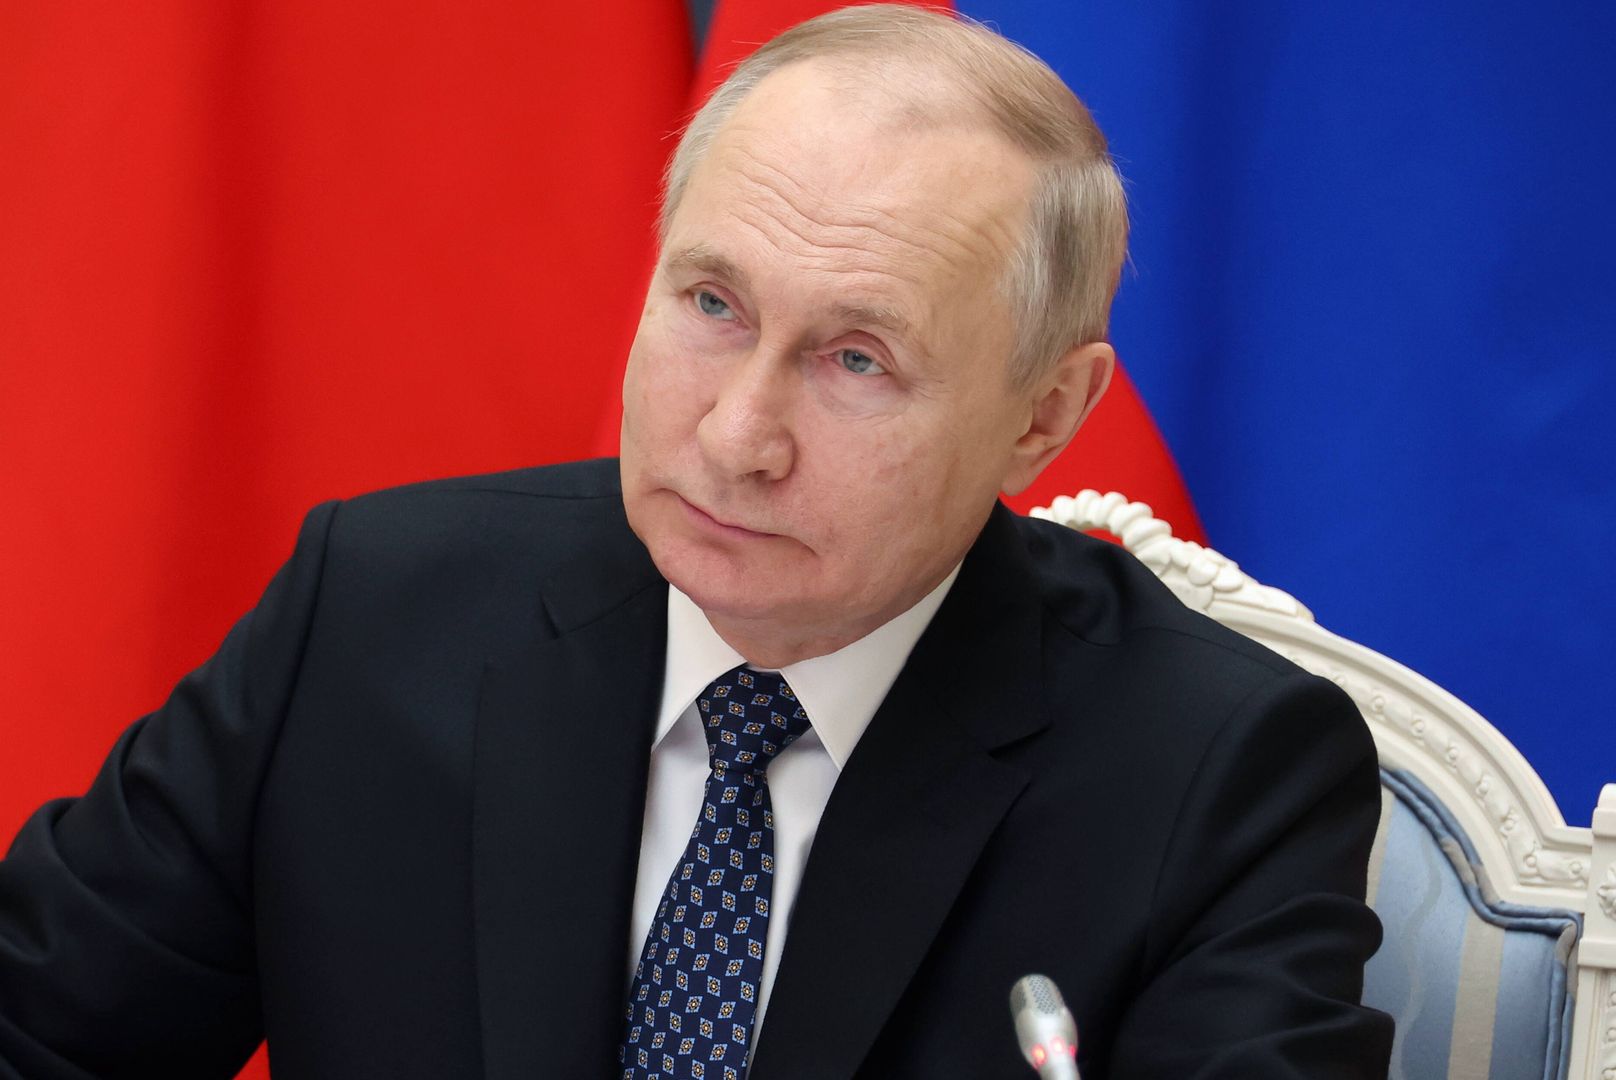 Rosjanie uciekają Putinowi. Zaskakujący wniosek na Kremlu